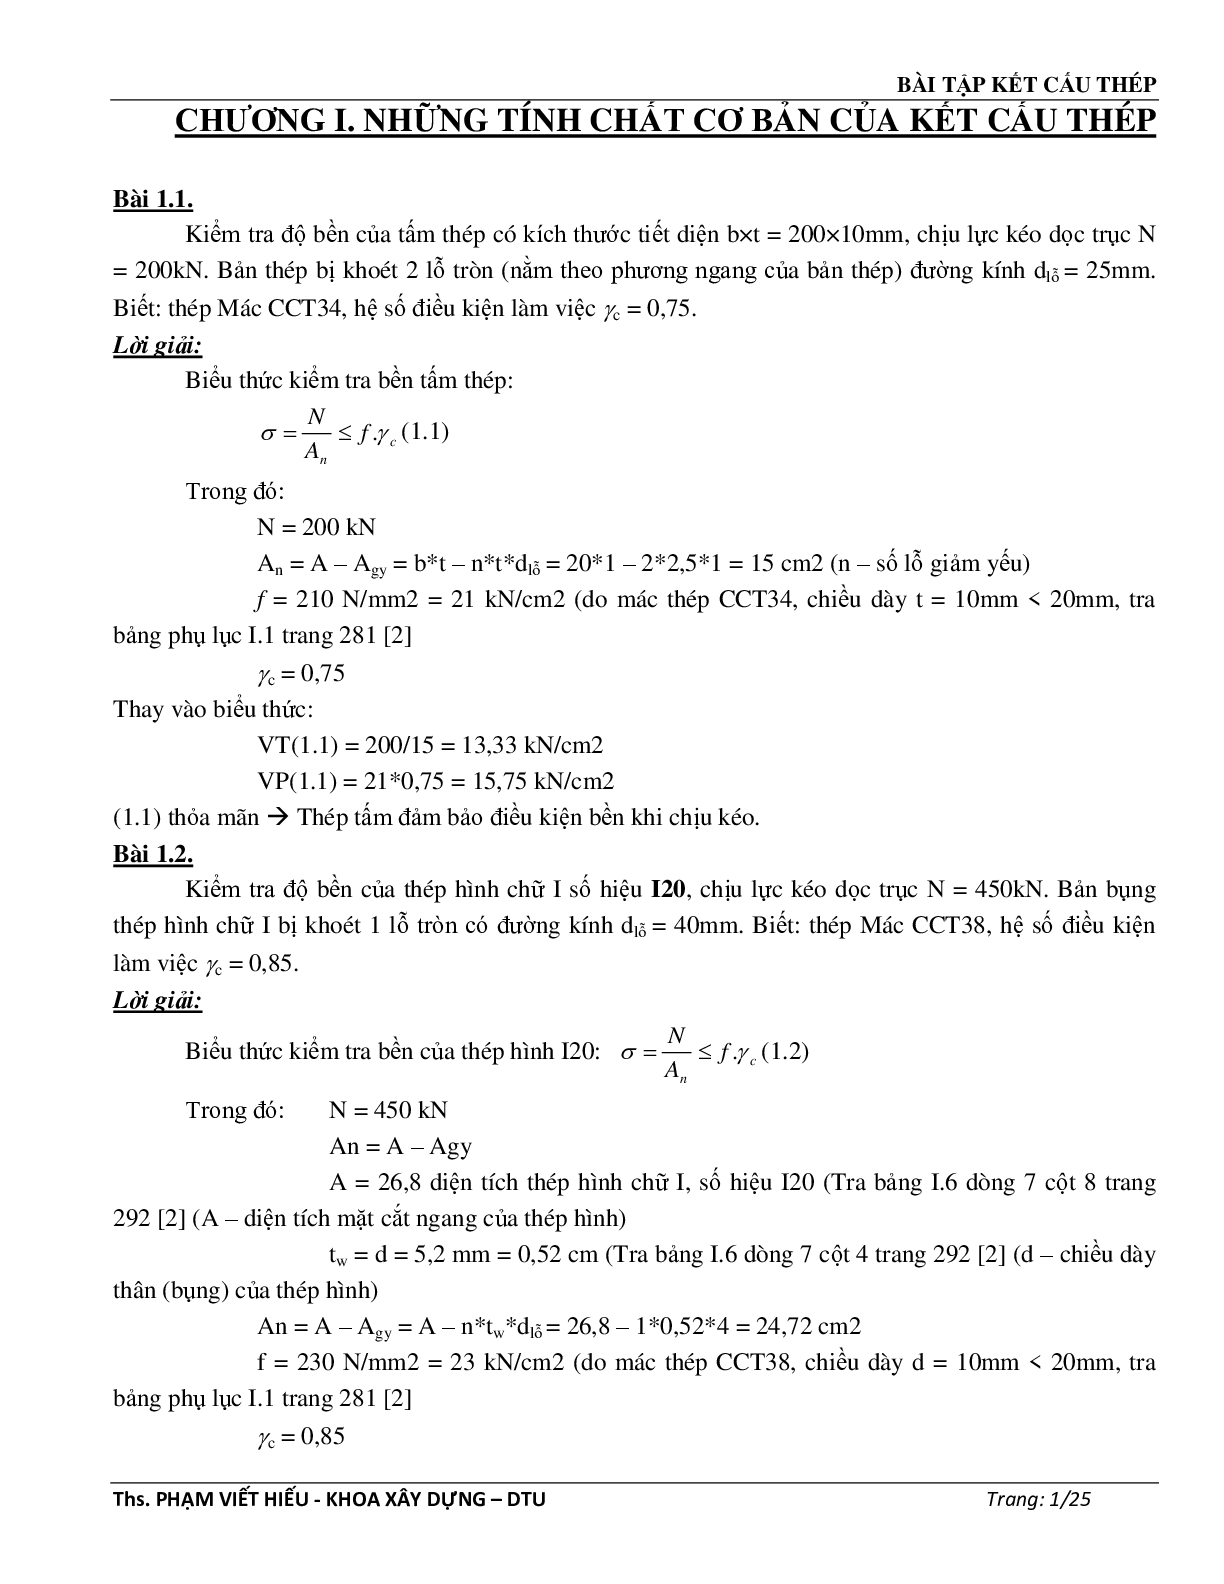 Ngân hàng bài tập môn Kết cấu thép (có đáp án) | Trường Đại học Duy Tân (trang 2)